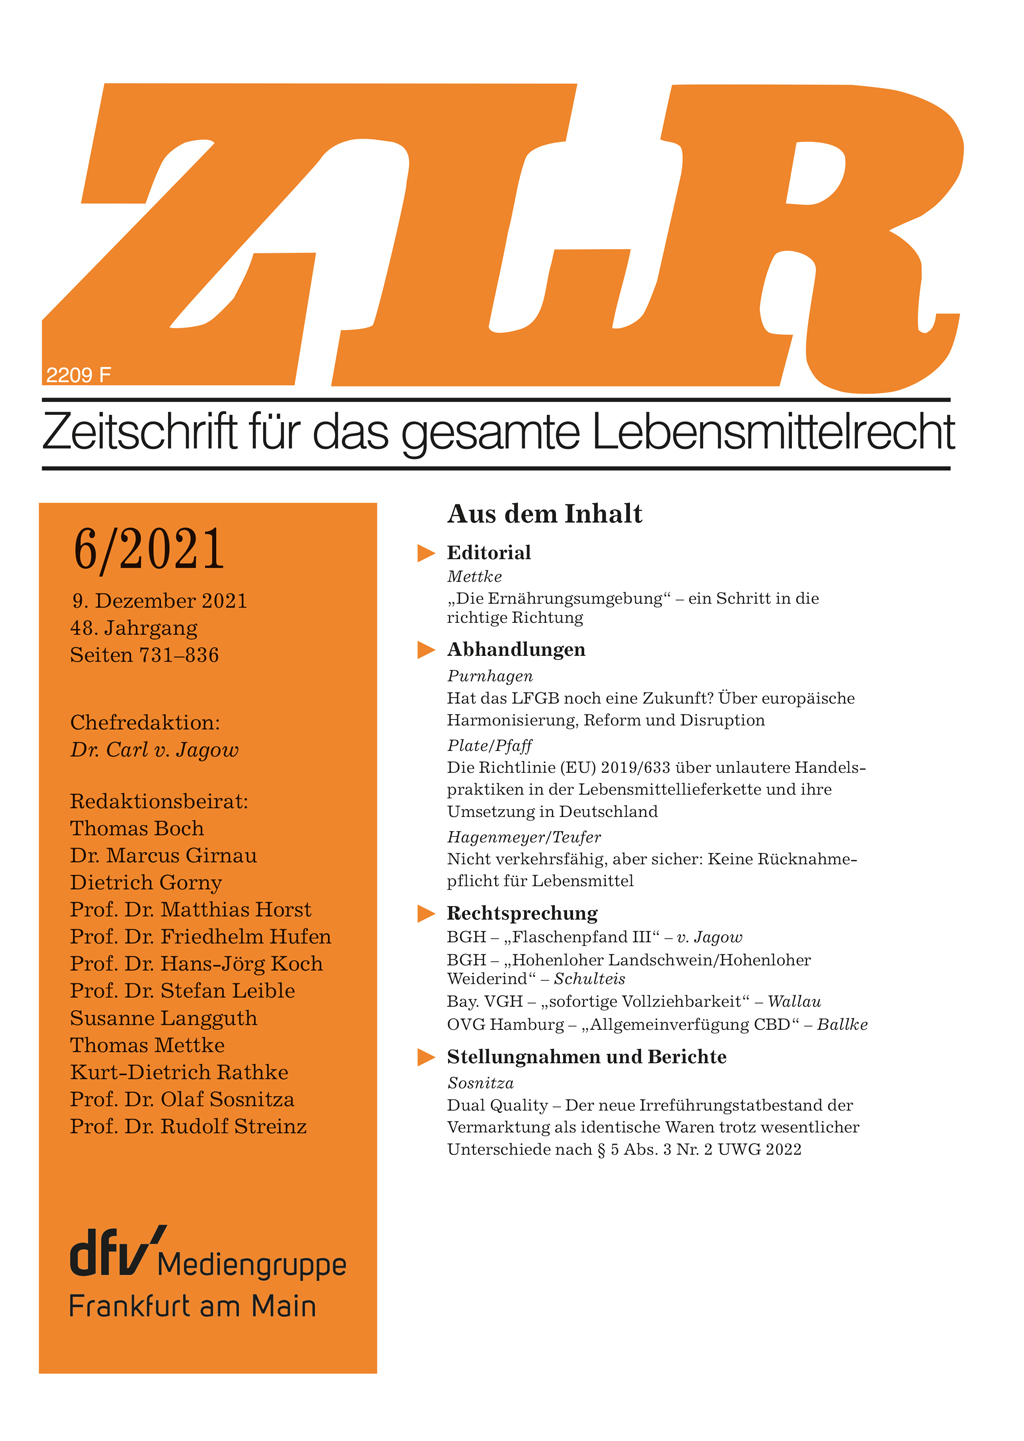 Abbildung: Zeitschrift für das gesamte Lebensmittelrecht (ZLR) 